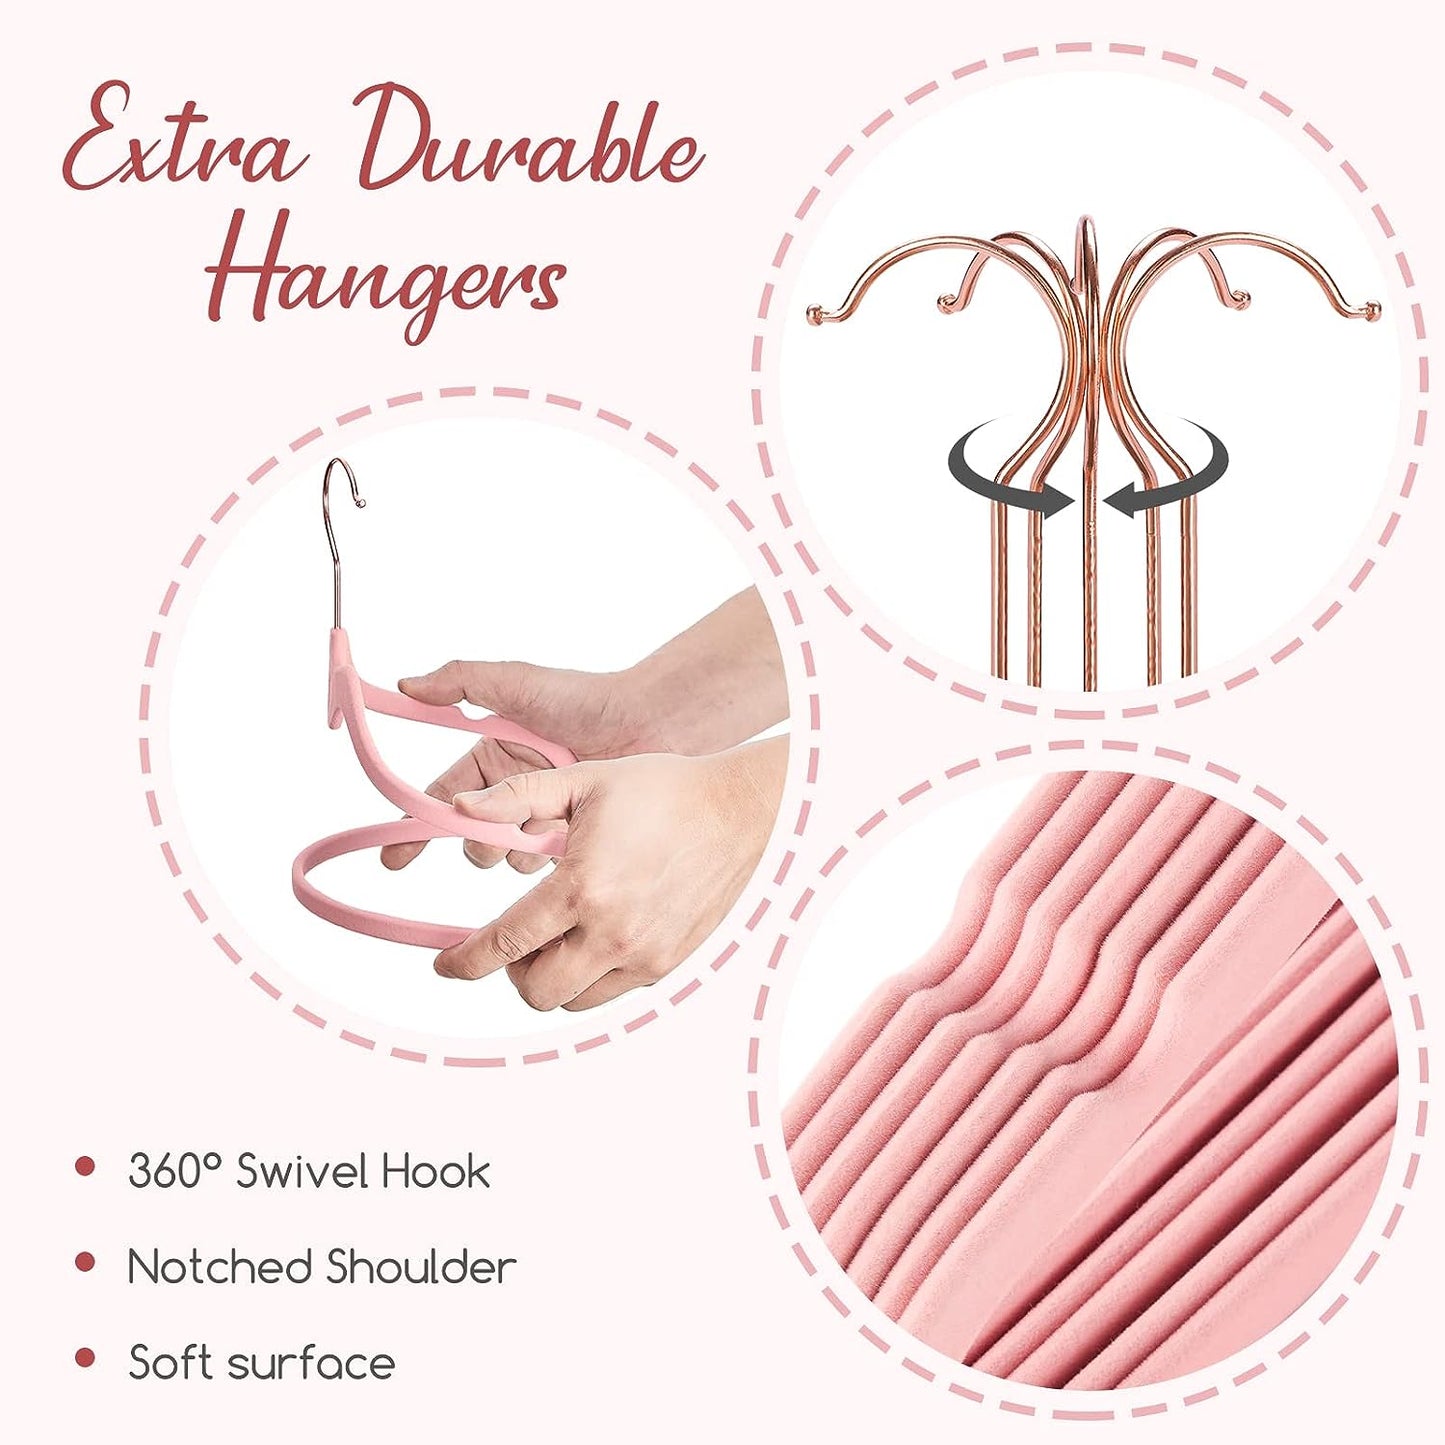 HOUSE DAY 16.5 Inch Velvet Hangers Pink 60 Pack